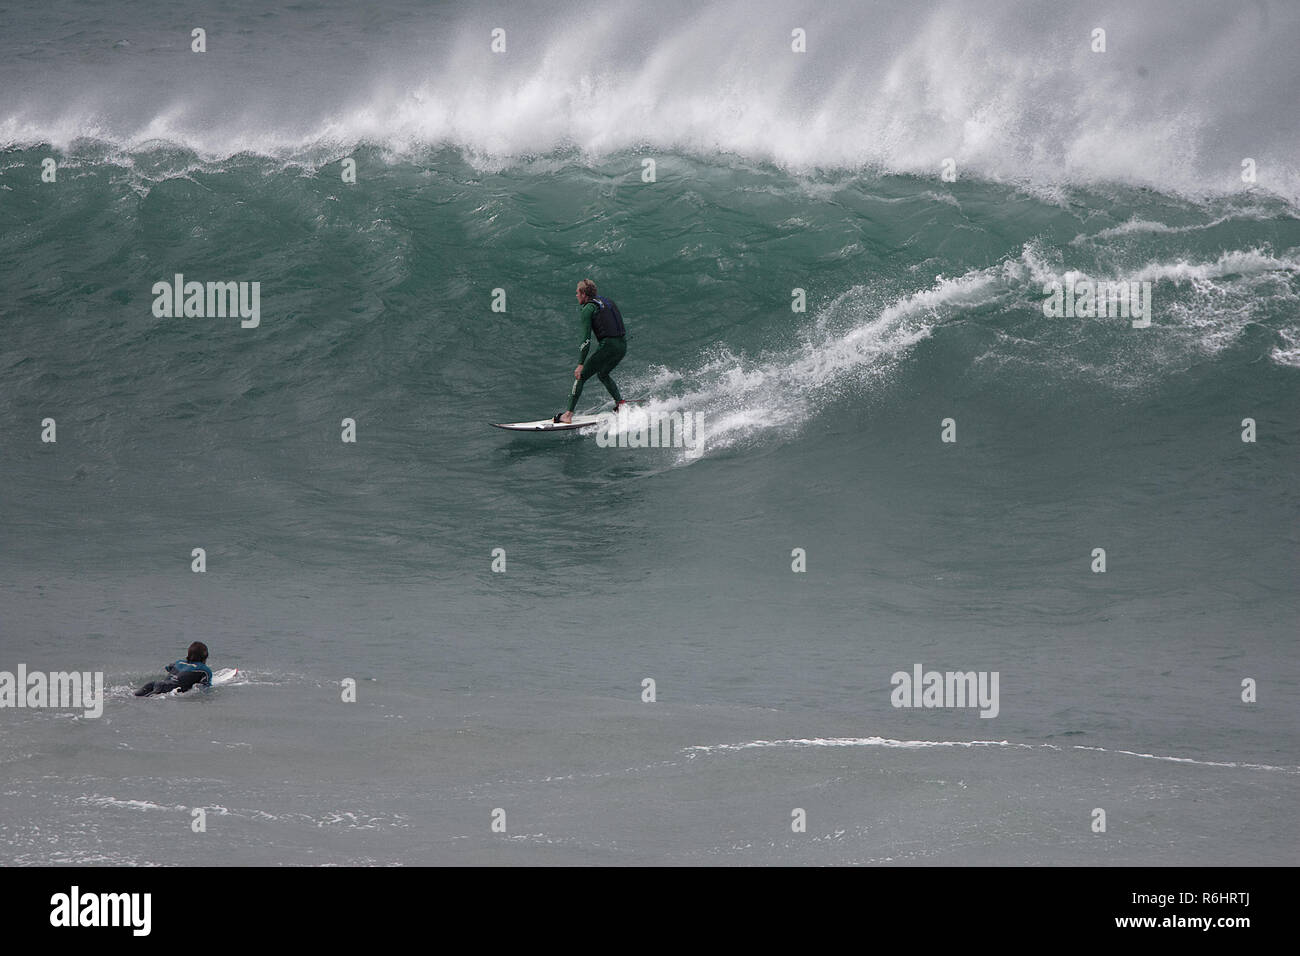 Big wave surfing at Newquay`s Cribbar point at Fistral Bay, Cornwall, UK Stock Photo